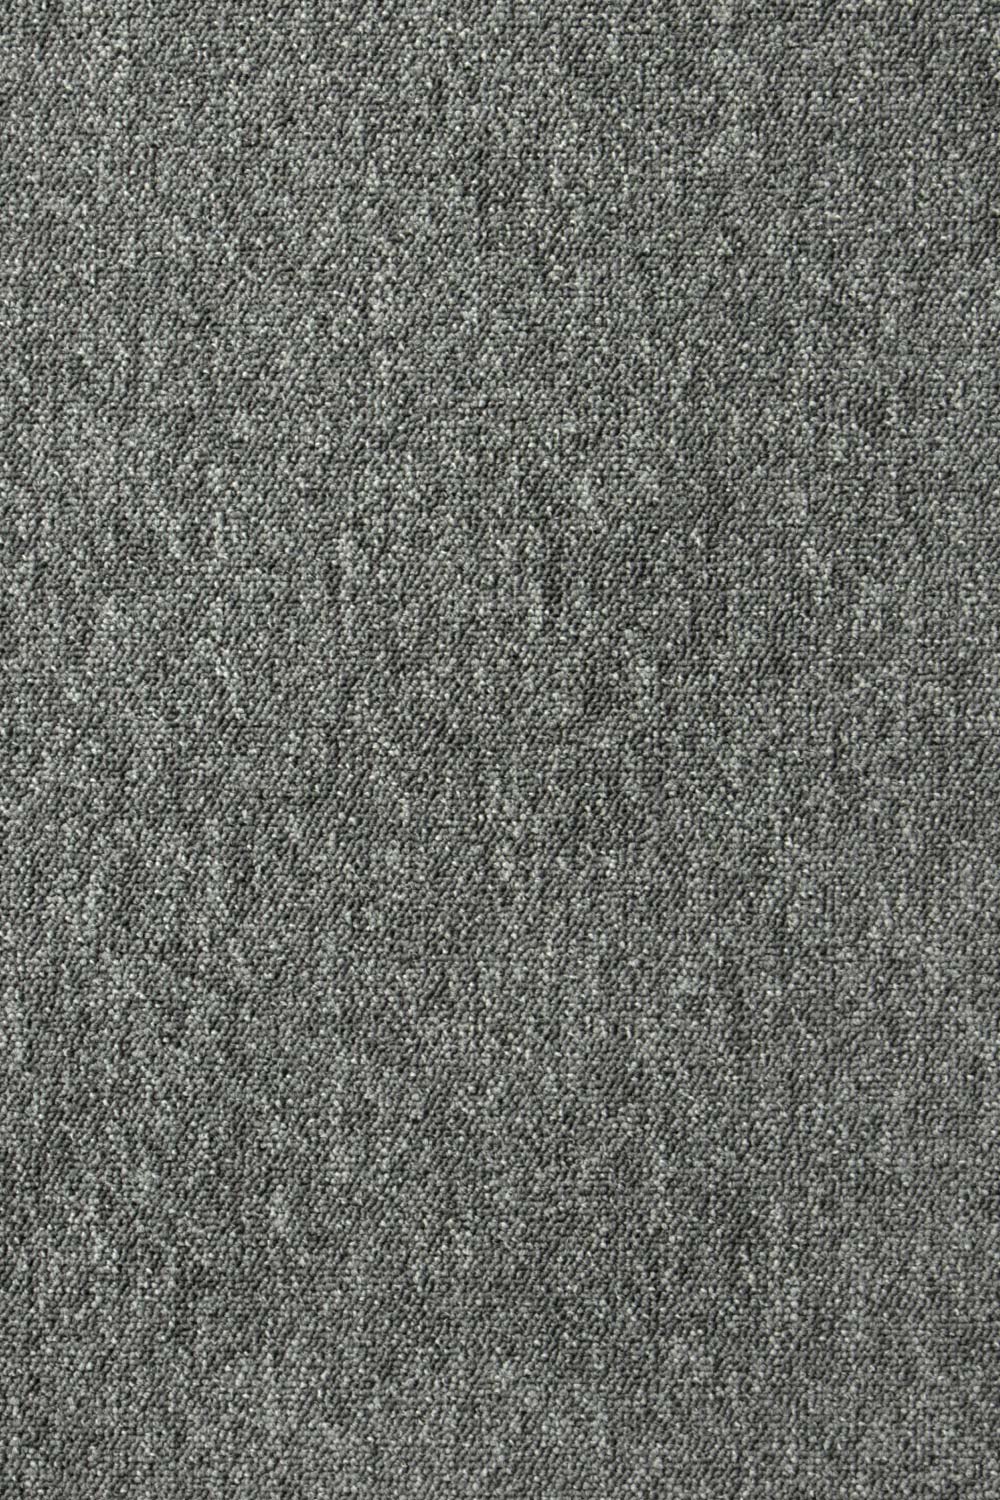 Metrážny koberec Lyon Solid 272 500 cm